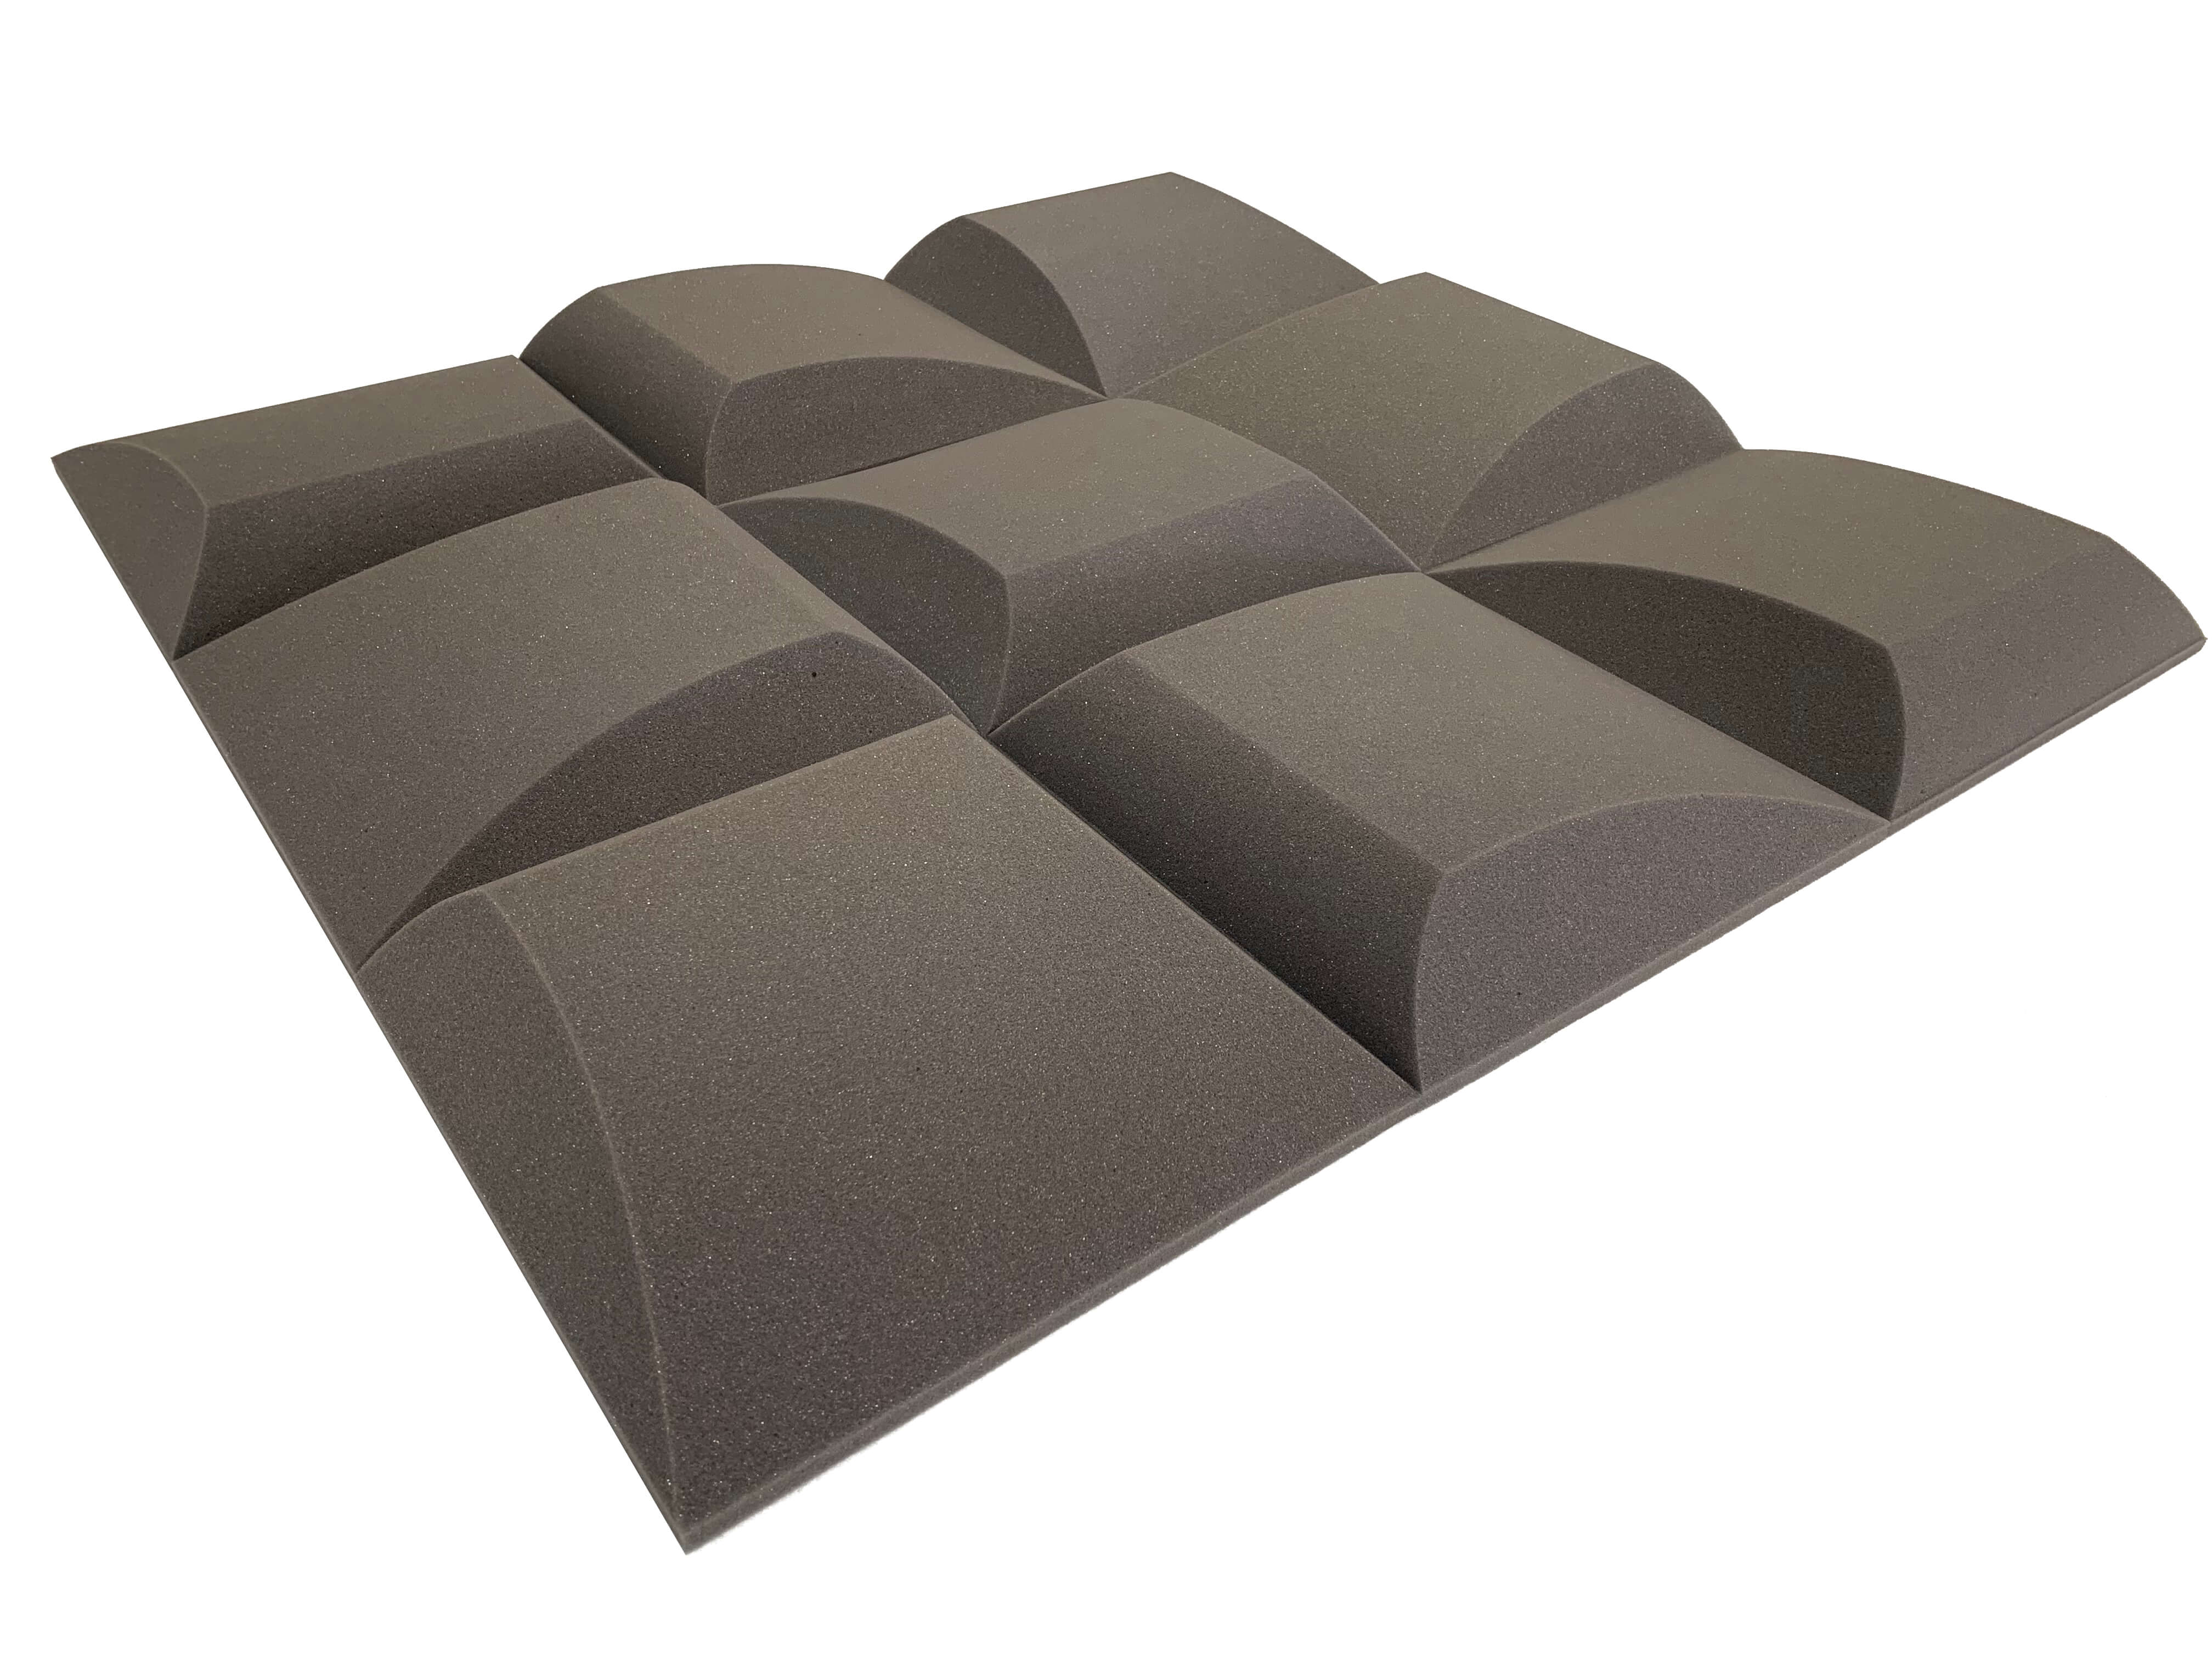 AeroFoil 12" Acoustic Studio Foam Tile Pack - 12 Tiles, 1.1qm Coverage-12